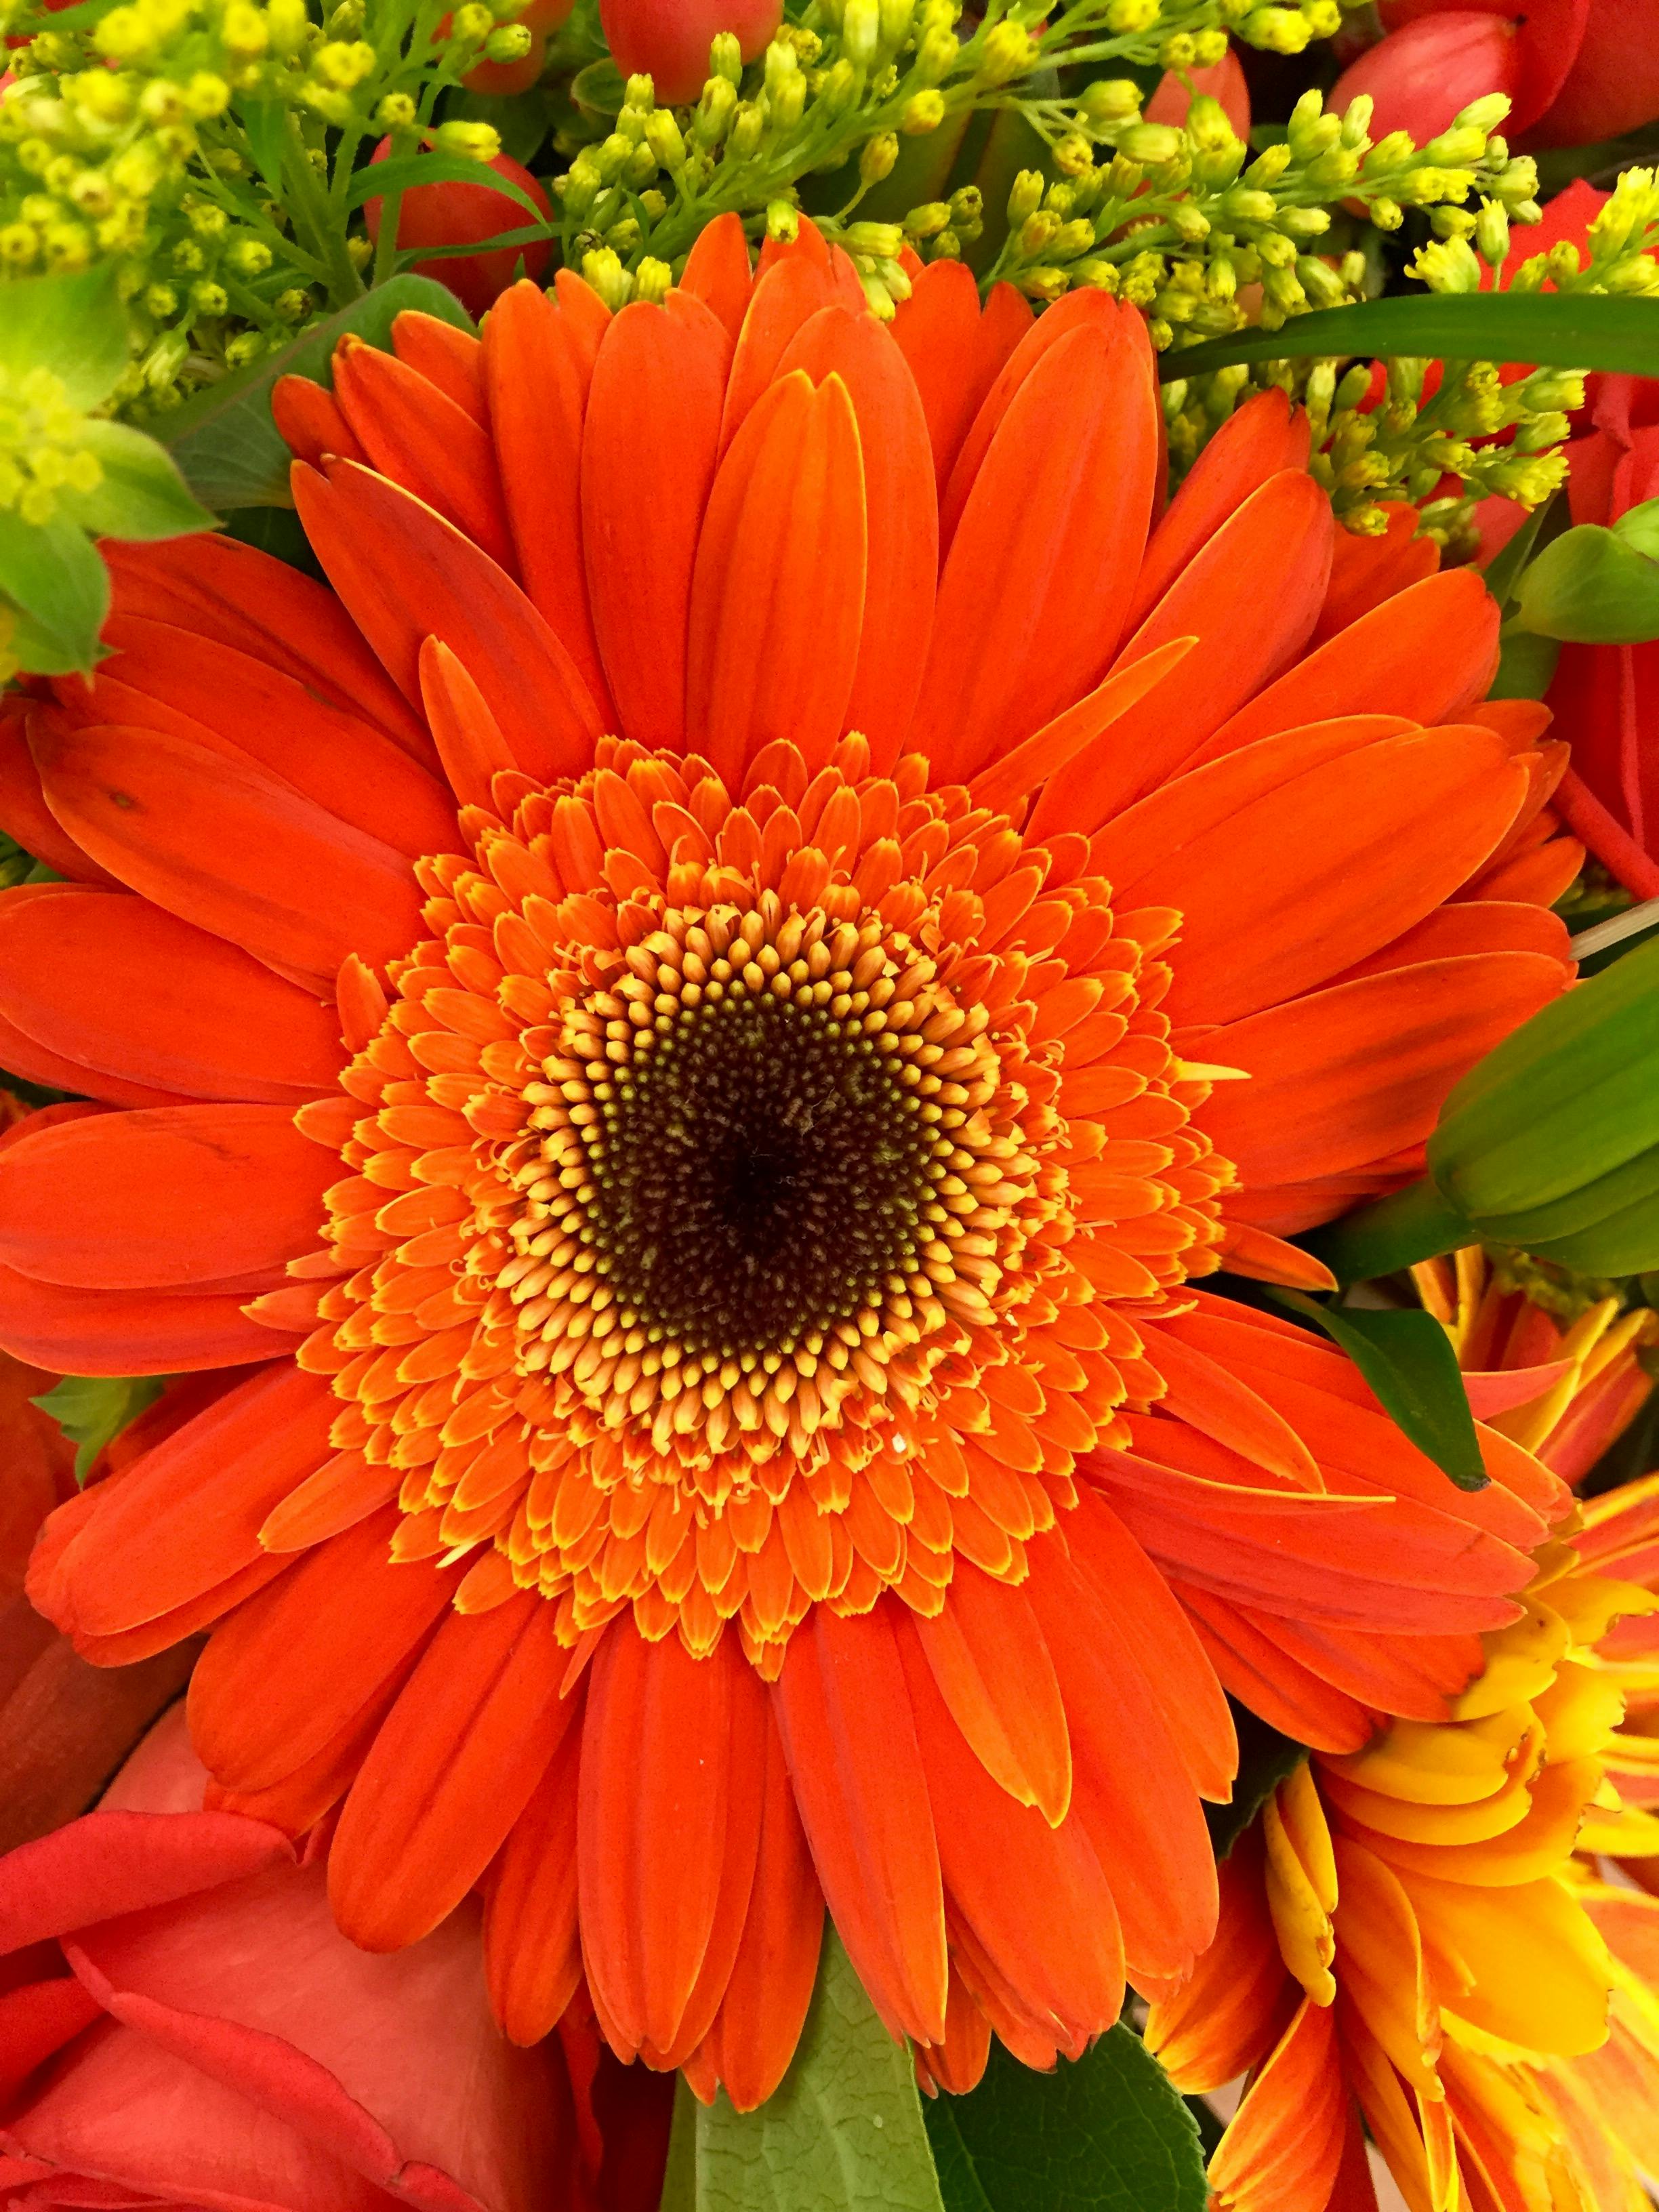 昼間のクローズアップ写真でオレンジと黒の花びらの花 無料の写真素材